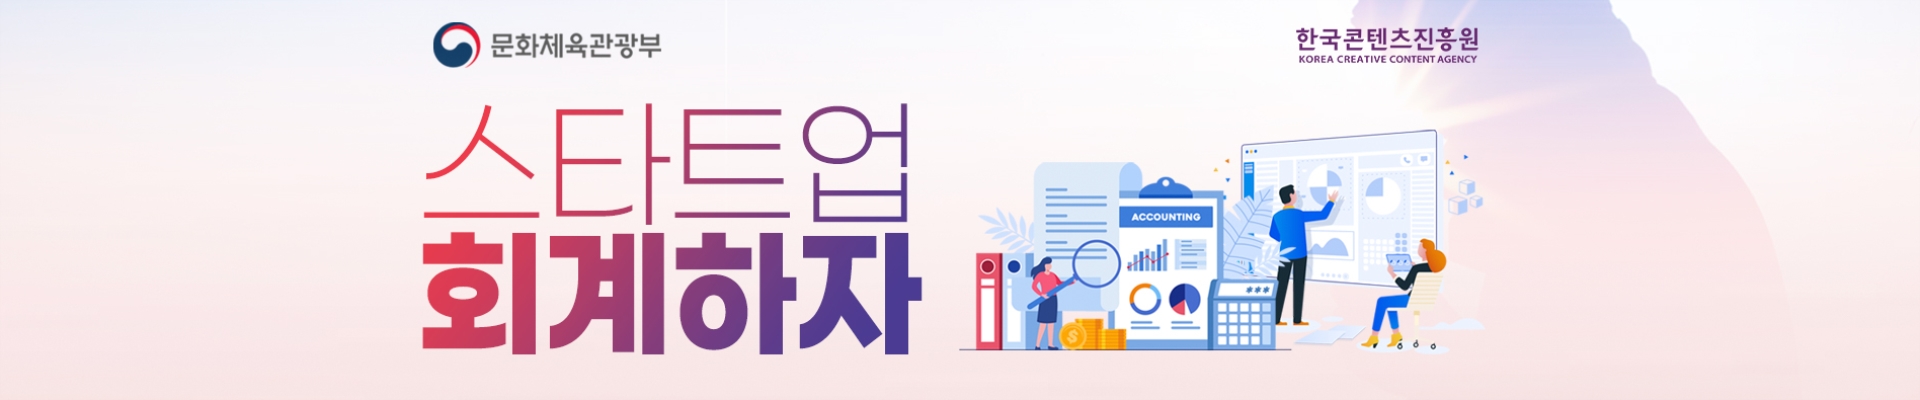 한국콘텐츠진흥원 회계·세무 세미나, 스타트업 회계하자!